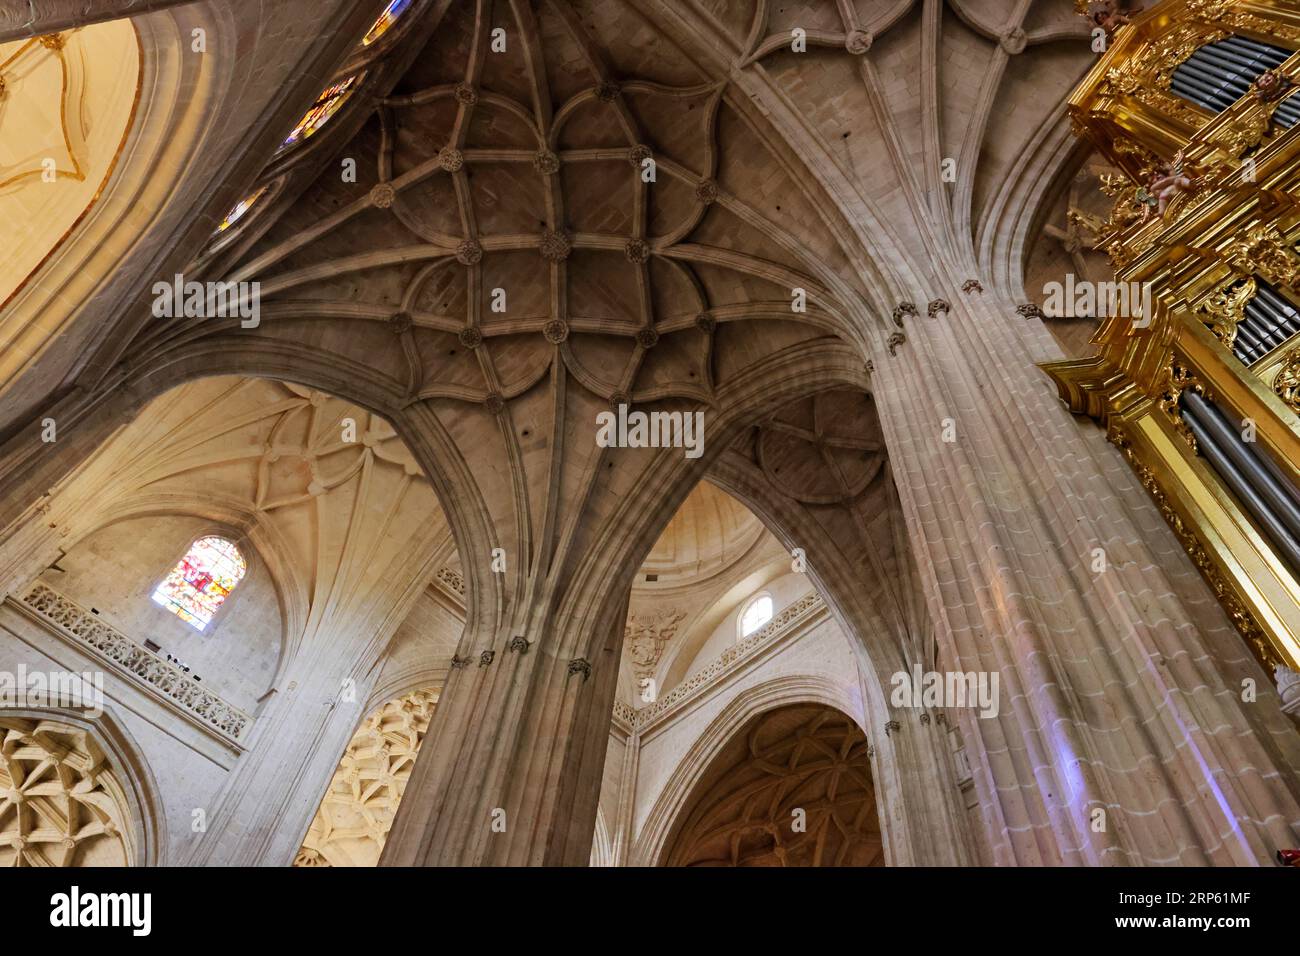 Spettacolare vista interna della cattedrale di Segovia, Spagna Foto Stock